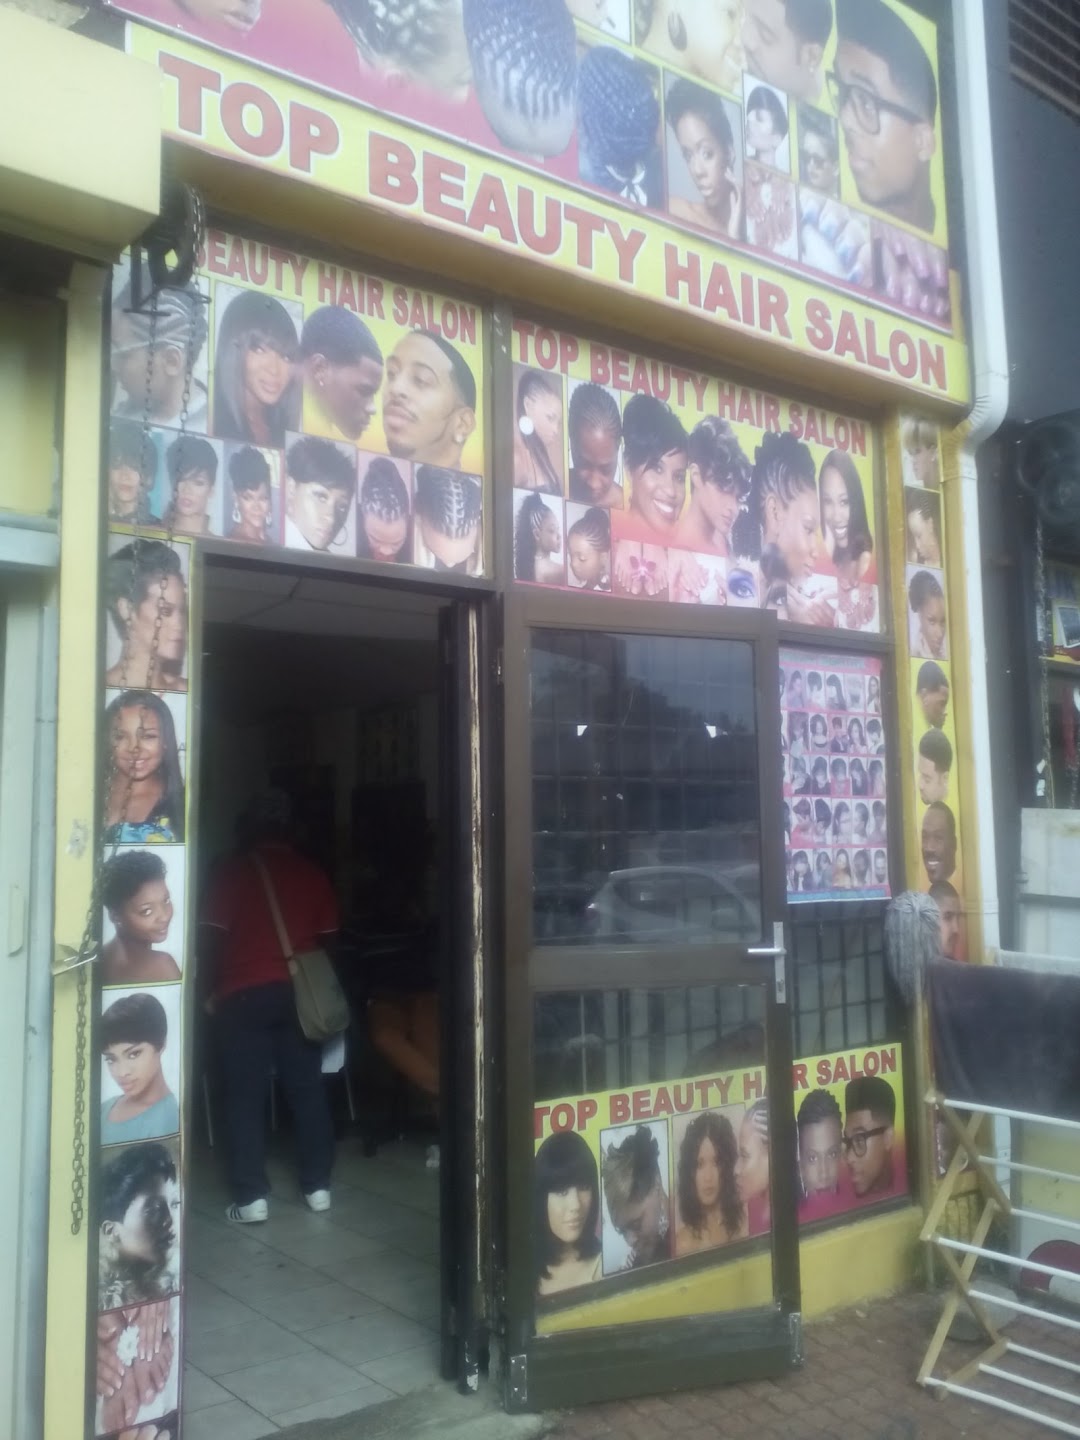 Top Beauty Hair Salon